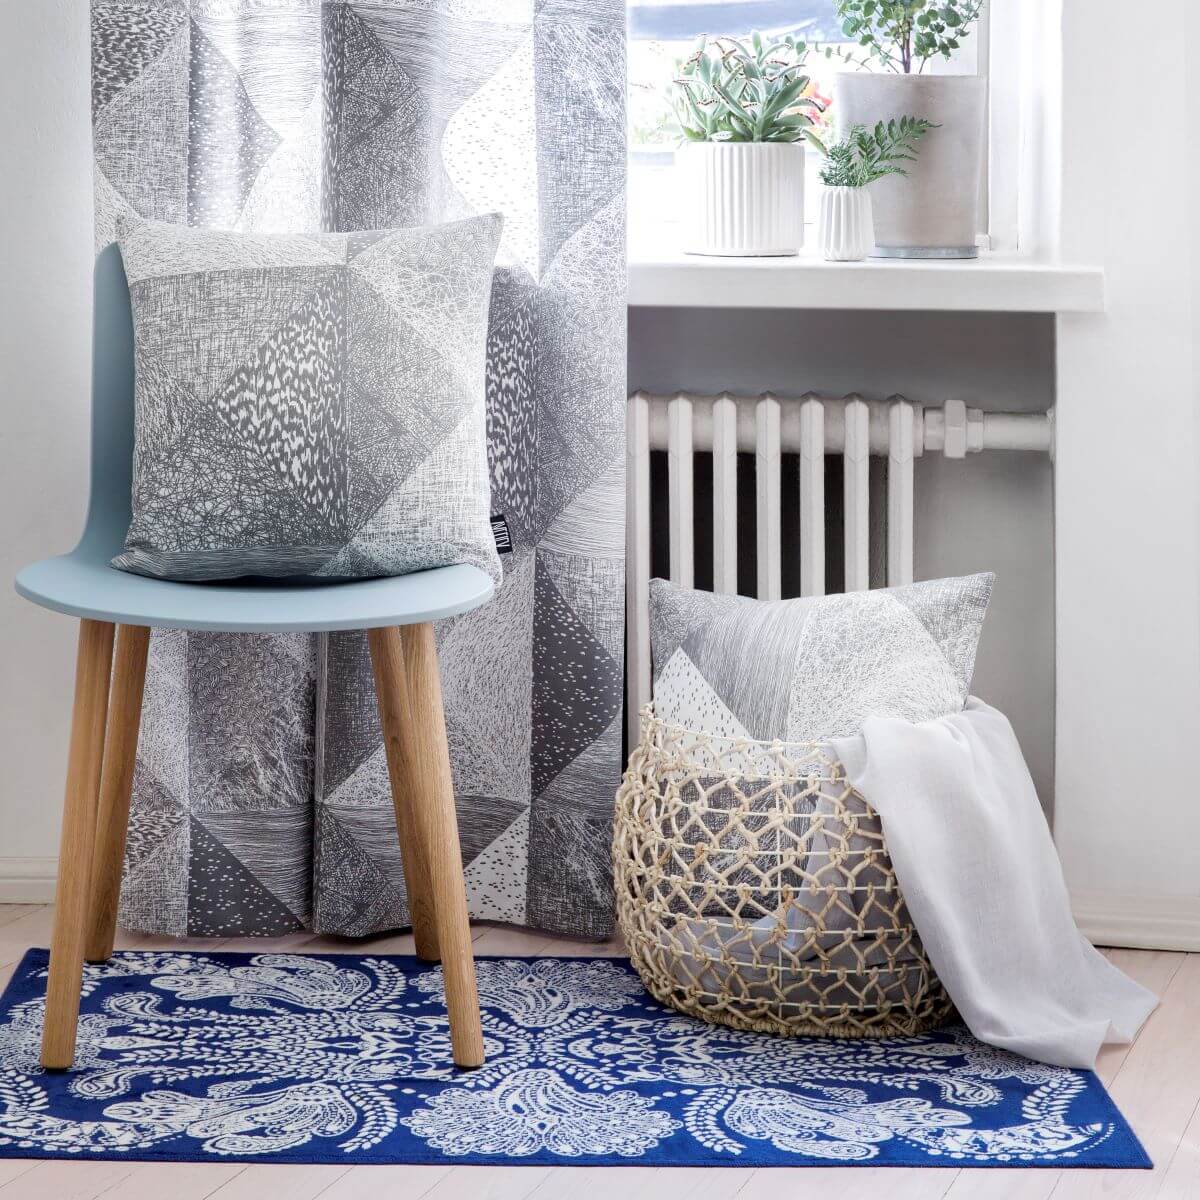 Dywanik niebieski SYVÄMERI. Dekoracyjny z białym stylowym wzorem niebieski dywanik z wiskozy w aranżacji w pokoju skandynawskim